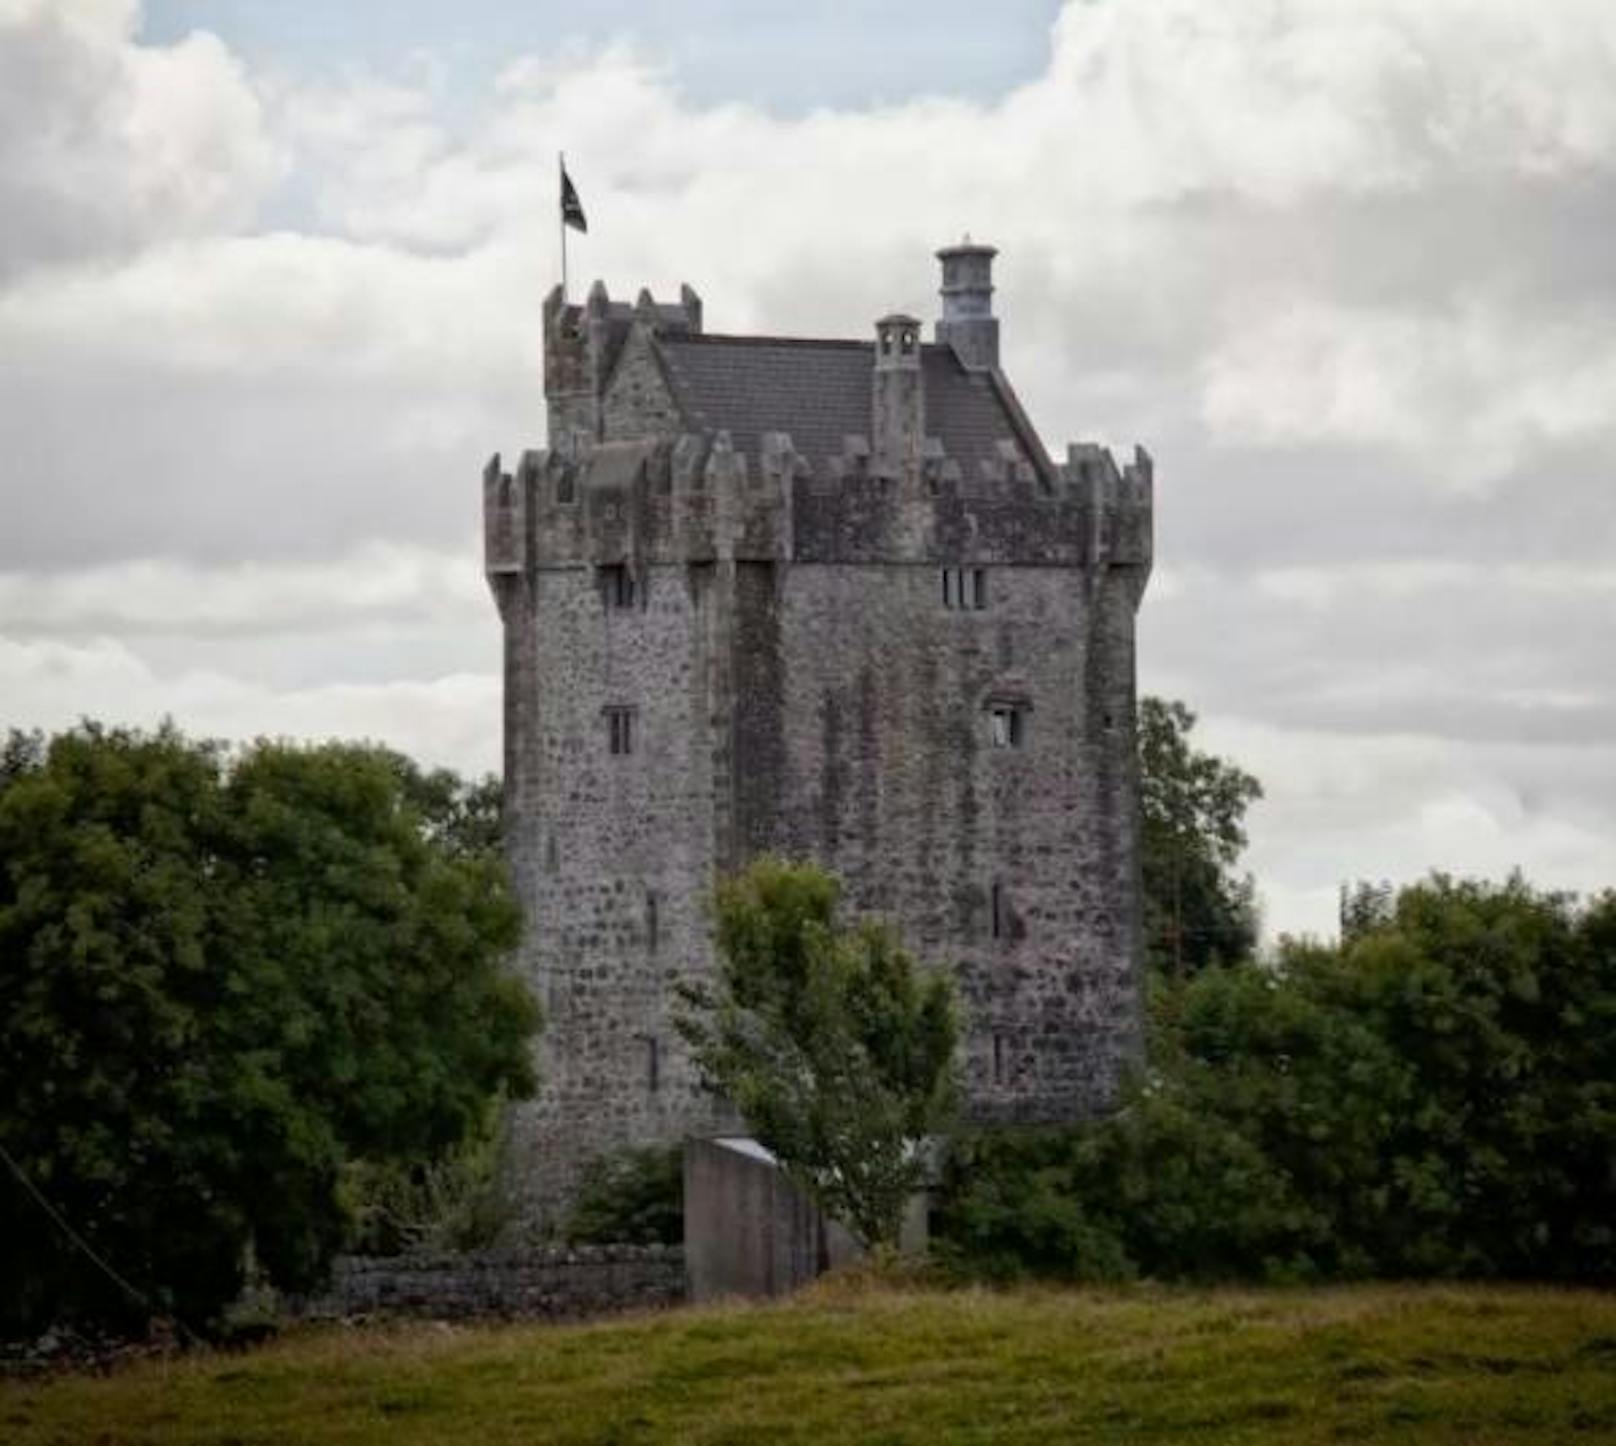 <b>Cahir Castle, Galway, Irland</b>
Etwas älter ist dieses Schloss: Das Cahir Castle wurde im späten 15. Jahrhundert gebaut. Peter, der Besitzer, lebt bereits seit 20 Jahren dort.